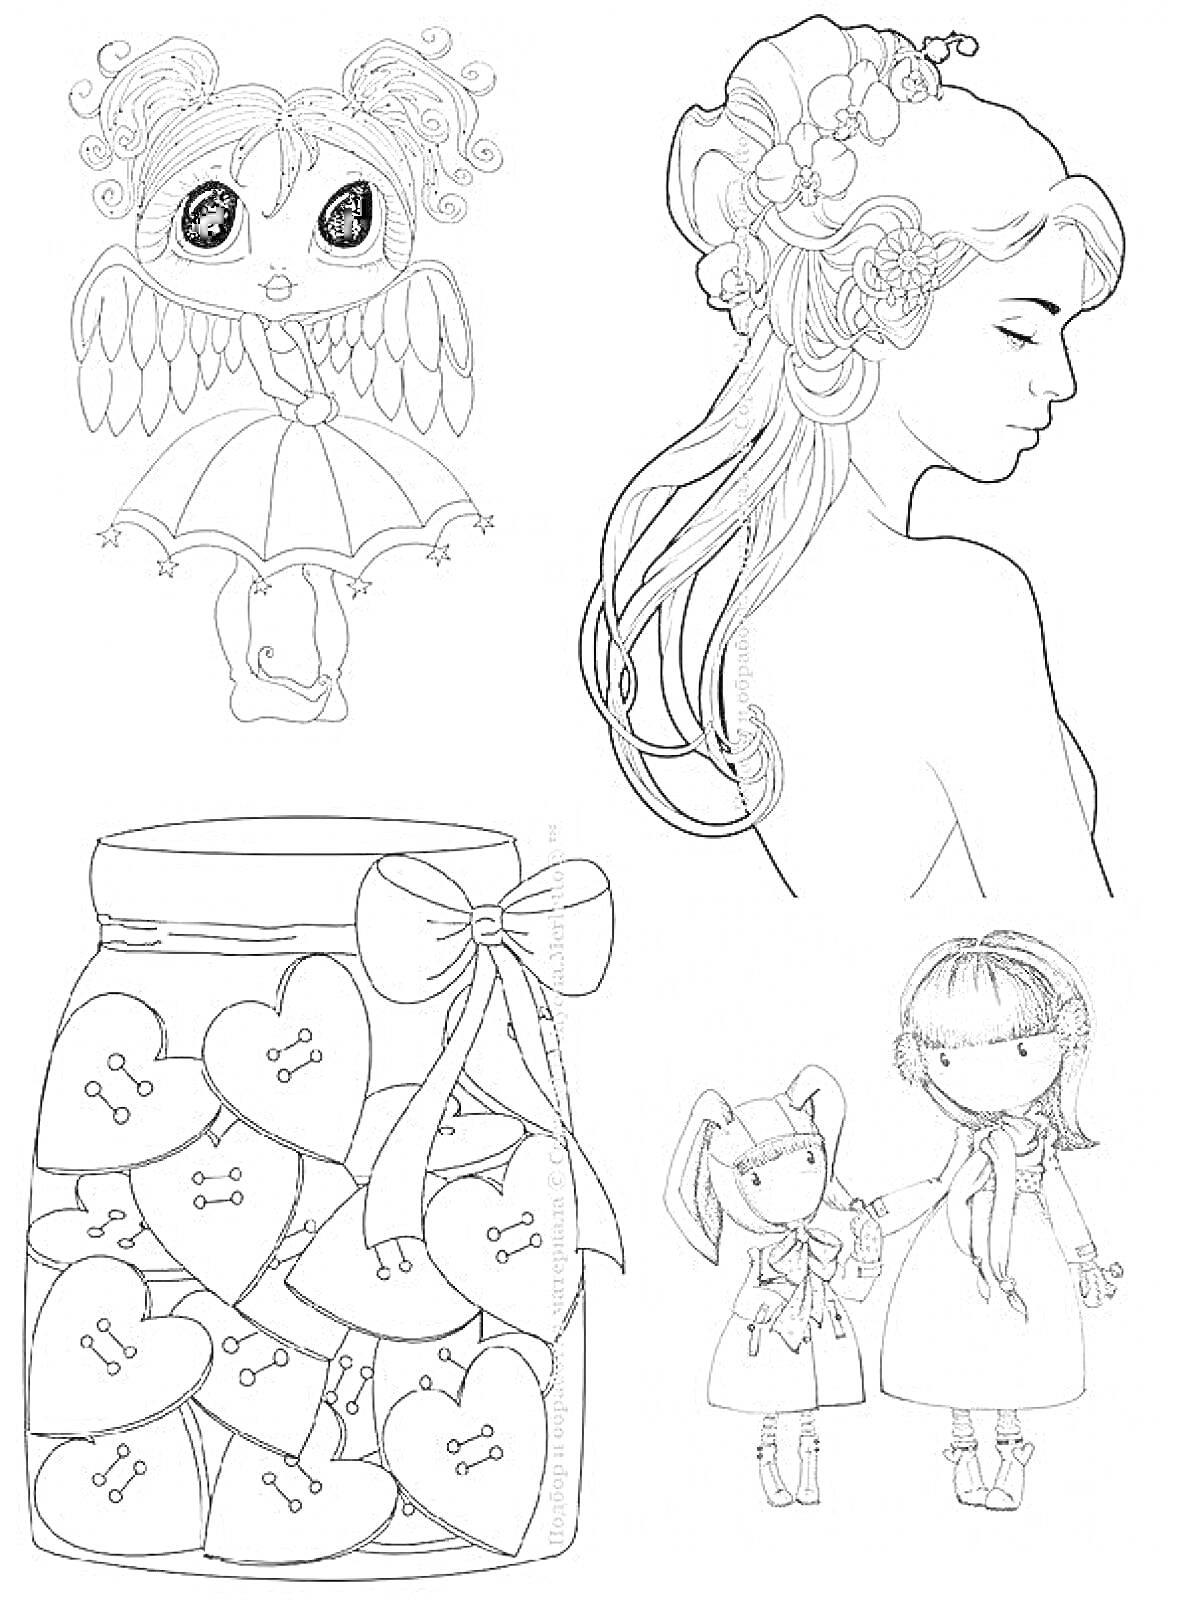 Девчачьи прикольные картинки для личного дневника (ангелочек с зонтиком, девушка с цветами в волосах, банка с сердечками, куклы в платьях с длинными волосами)